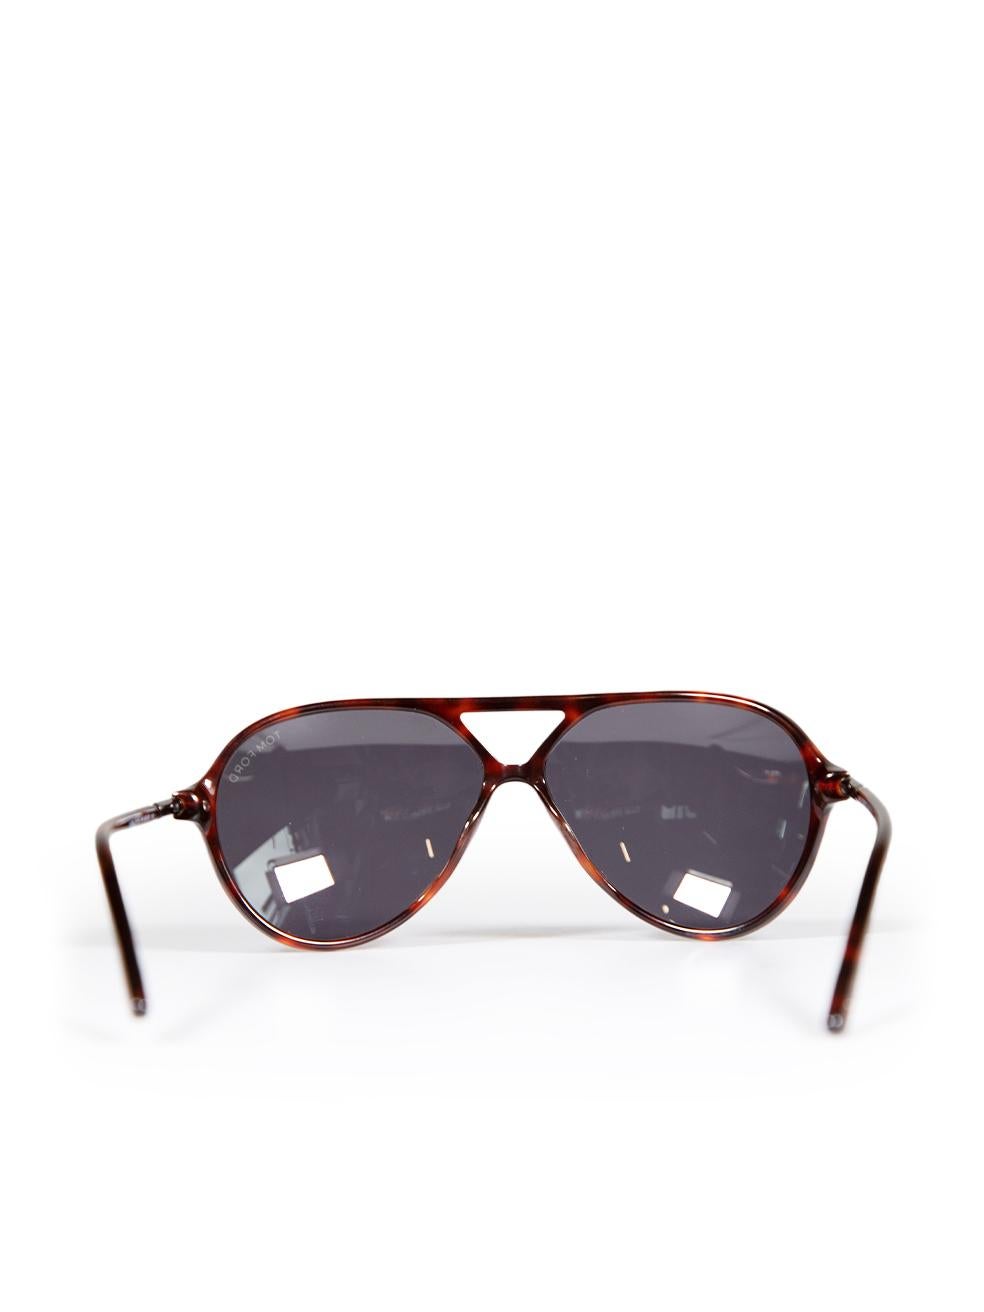 Women's Tom Ford Red Havana Tortoiseshell Leopold Sunglasses For Sale